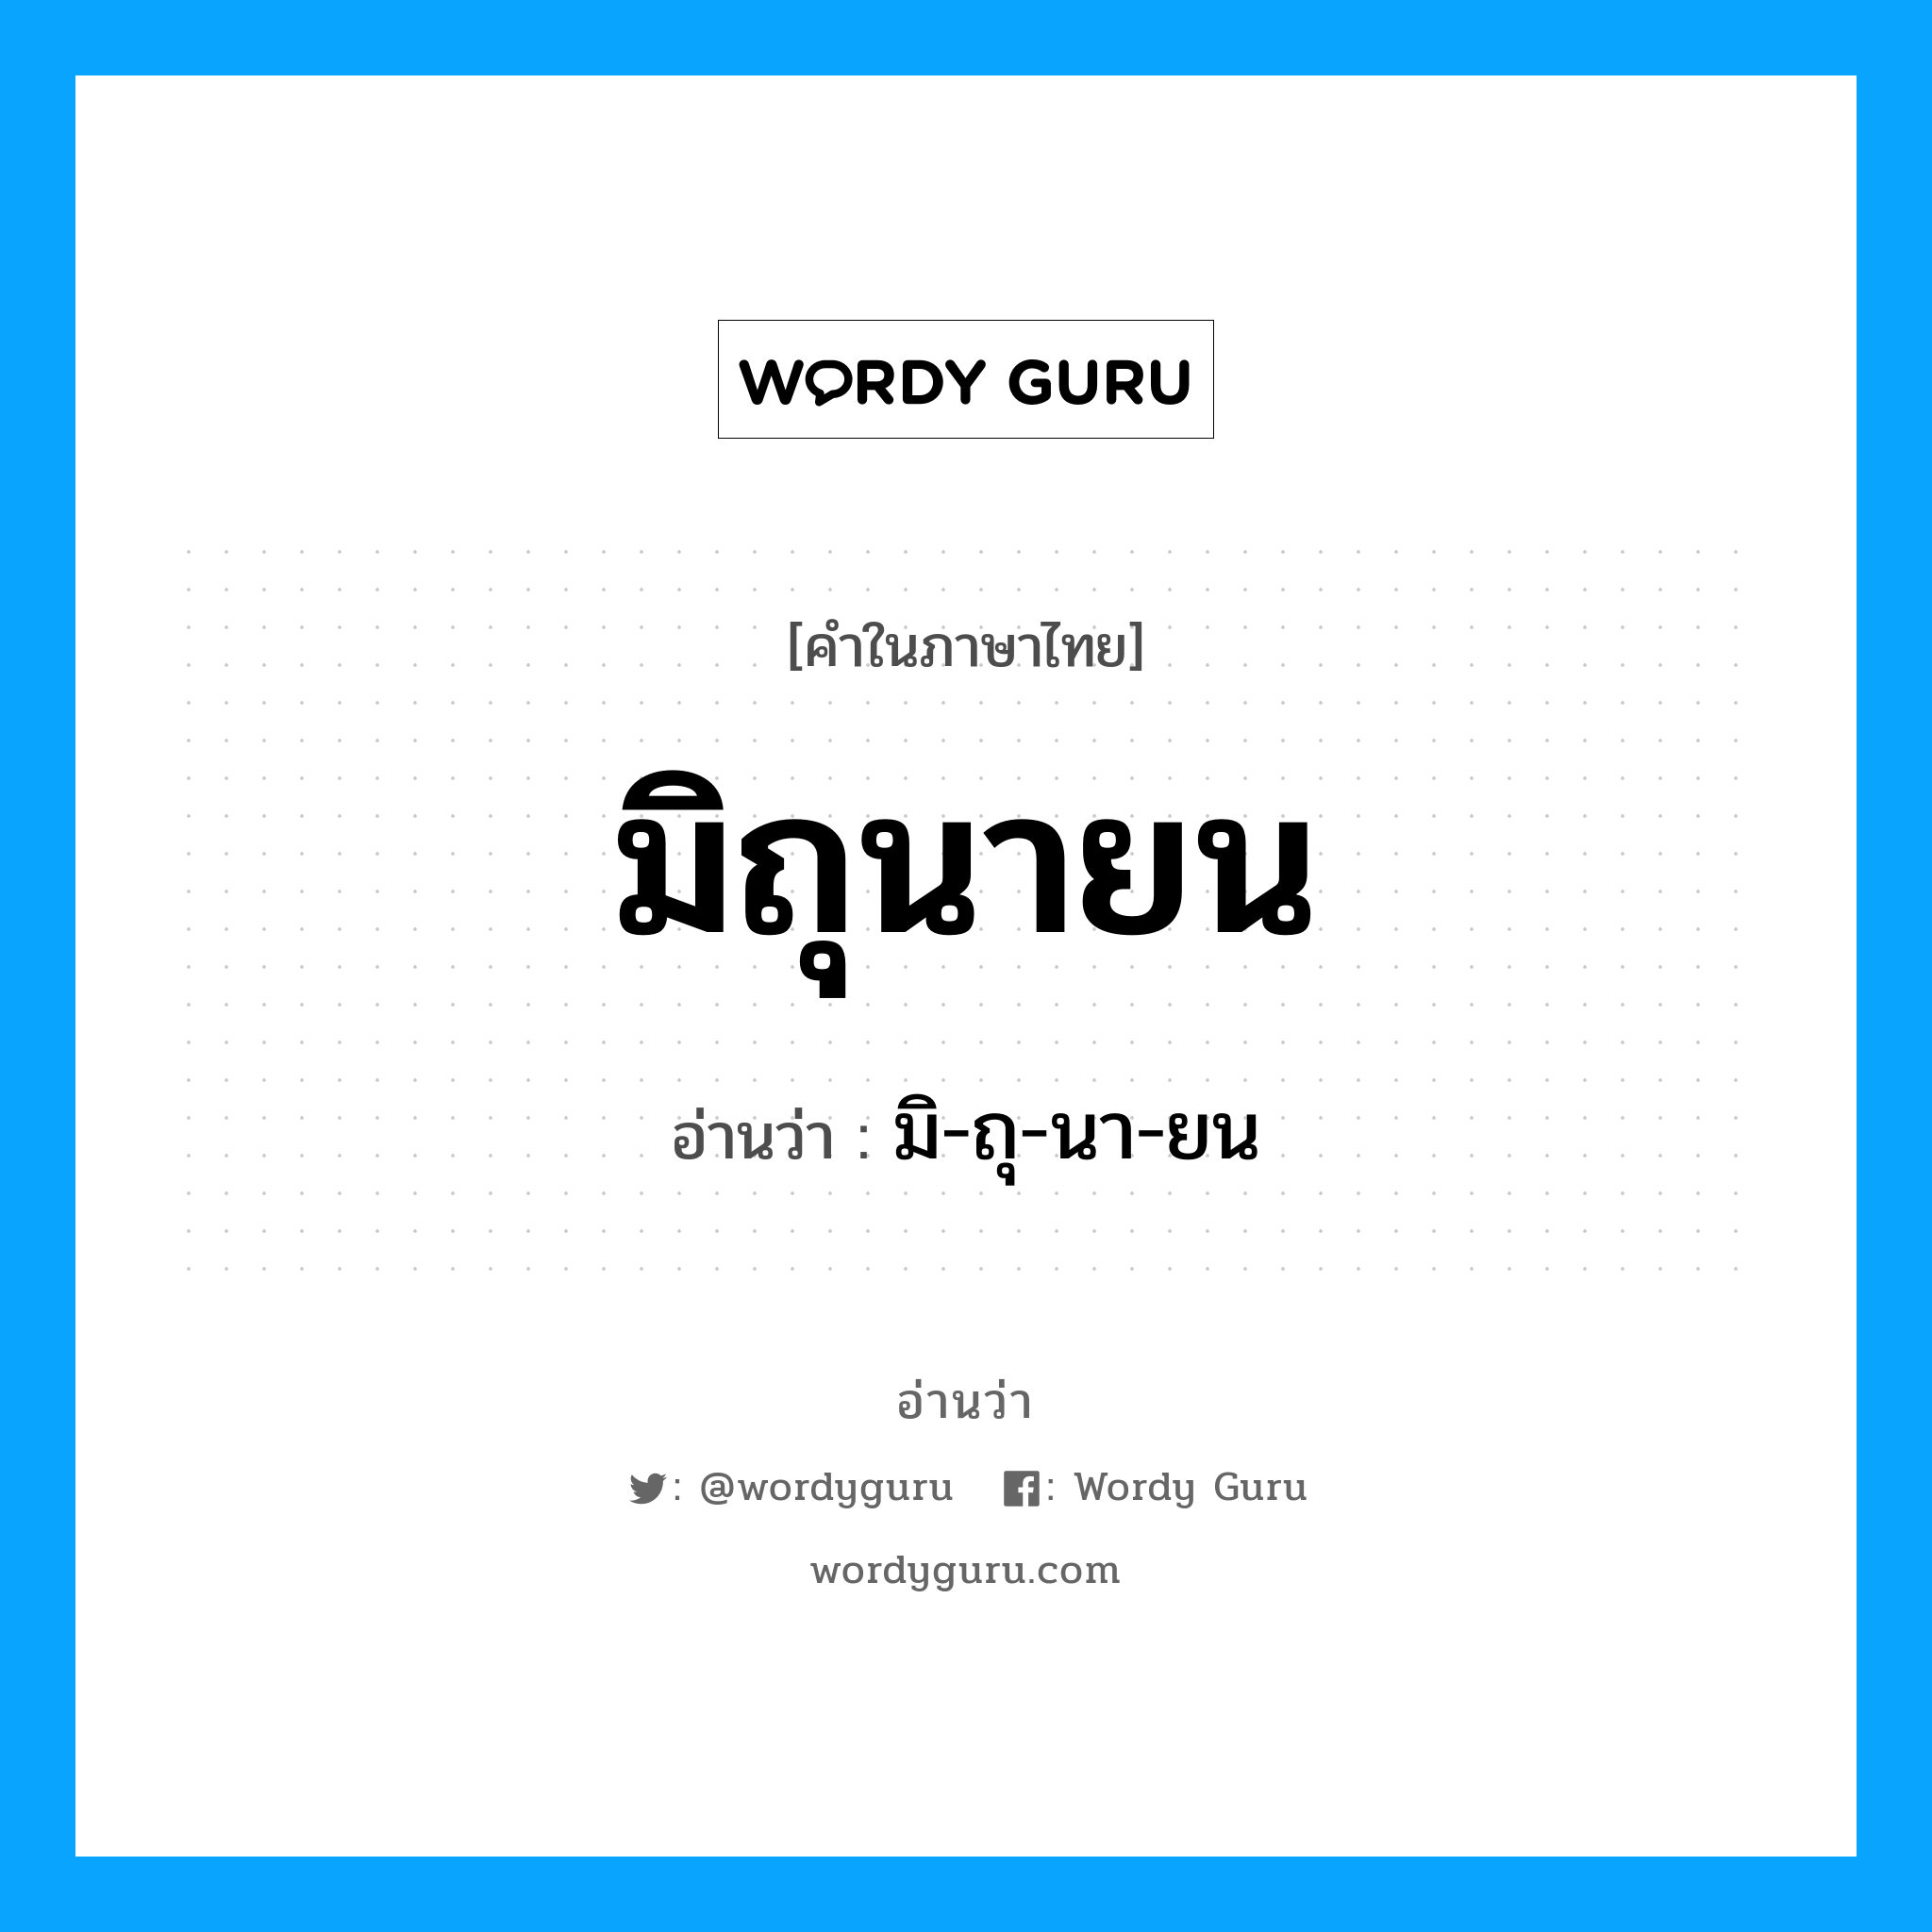 มิ-ถุ-นา-ยน เป็นคำอ่านของคำไหน?, คำในภาษาไทย มิ-ถุ-นา-ยน อ่านว่า มิถุนายน หมวด เดือน หมวด เดือน